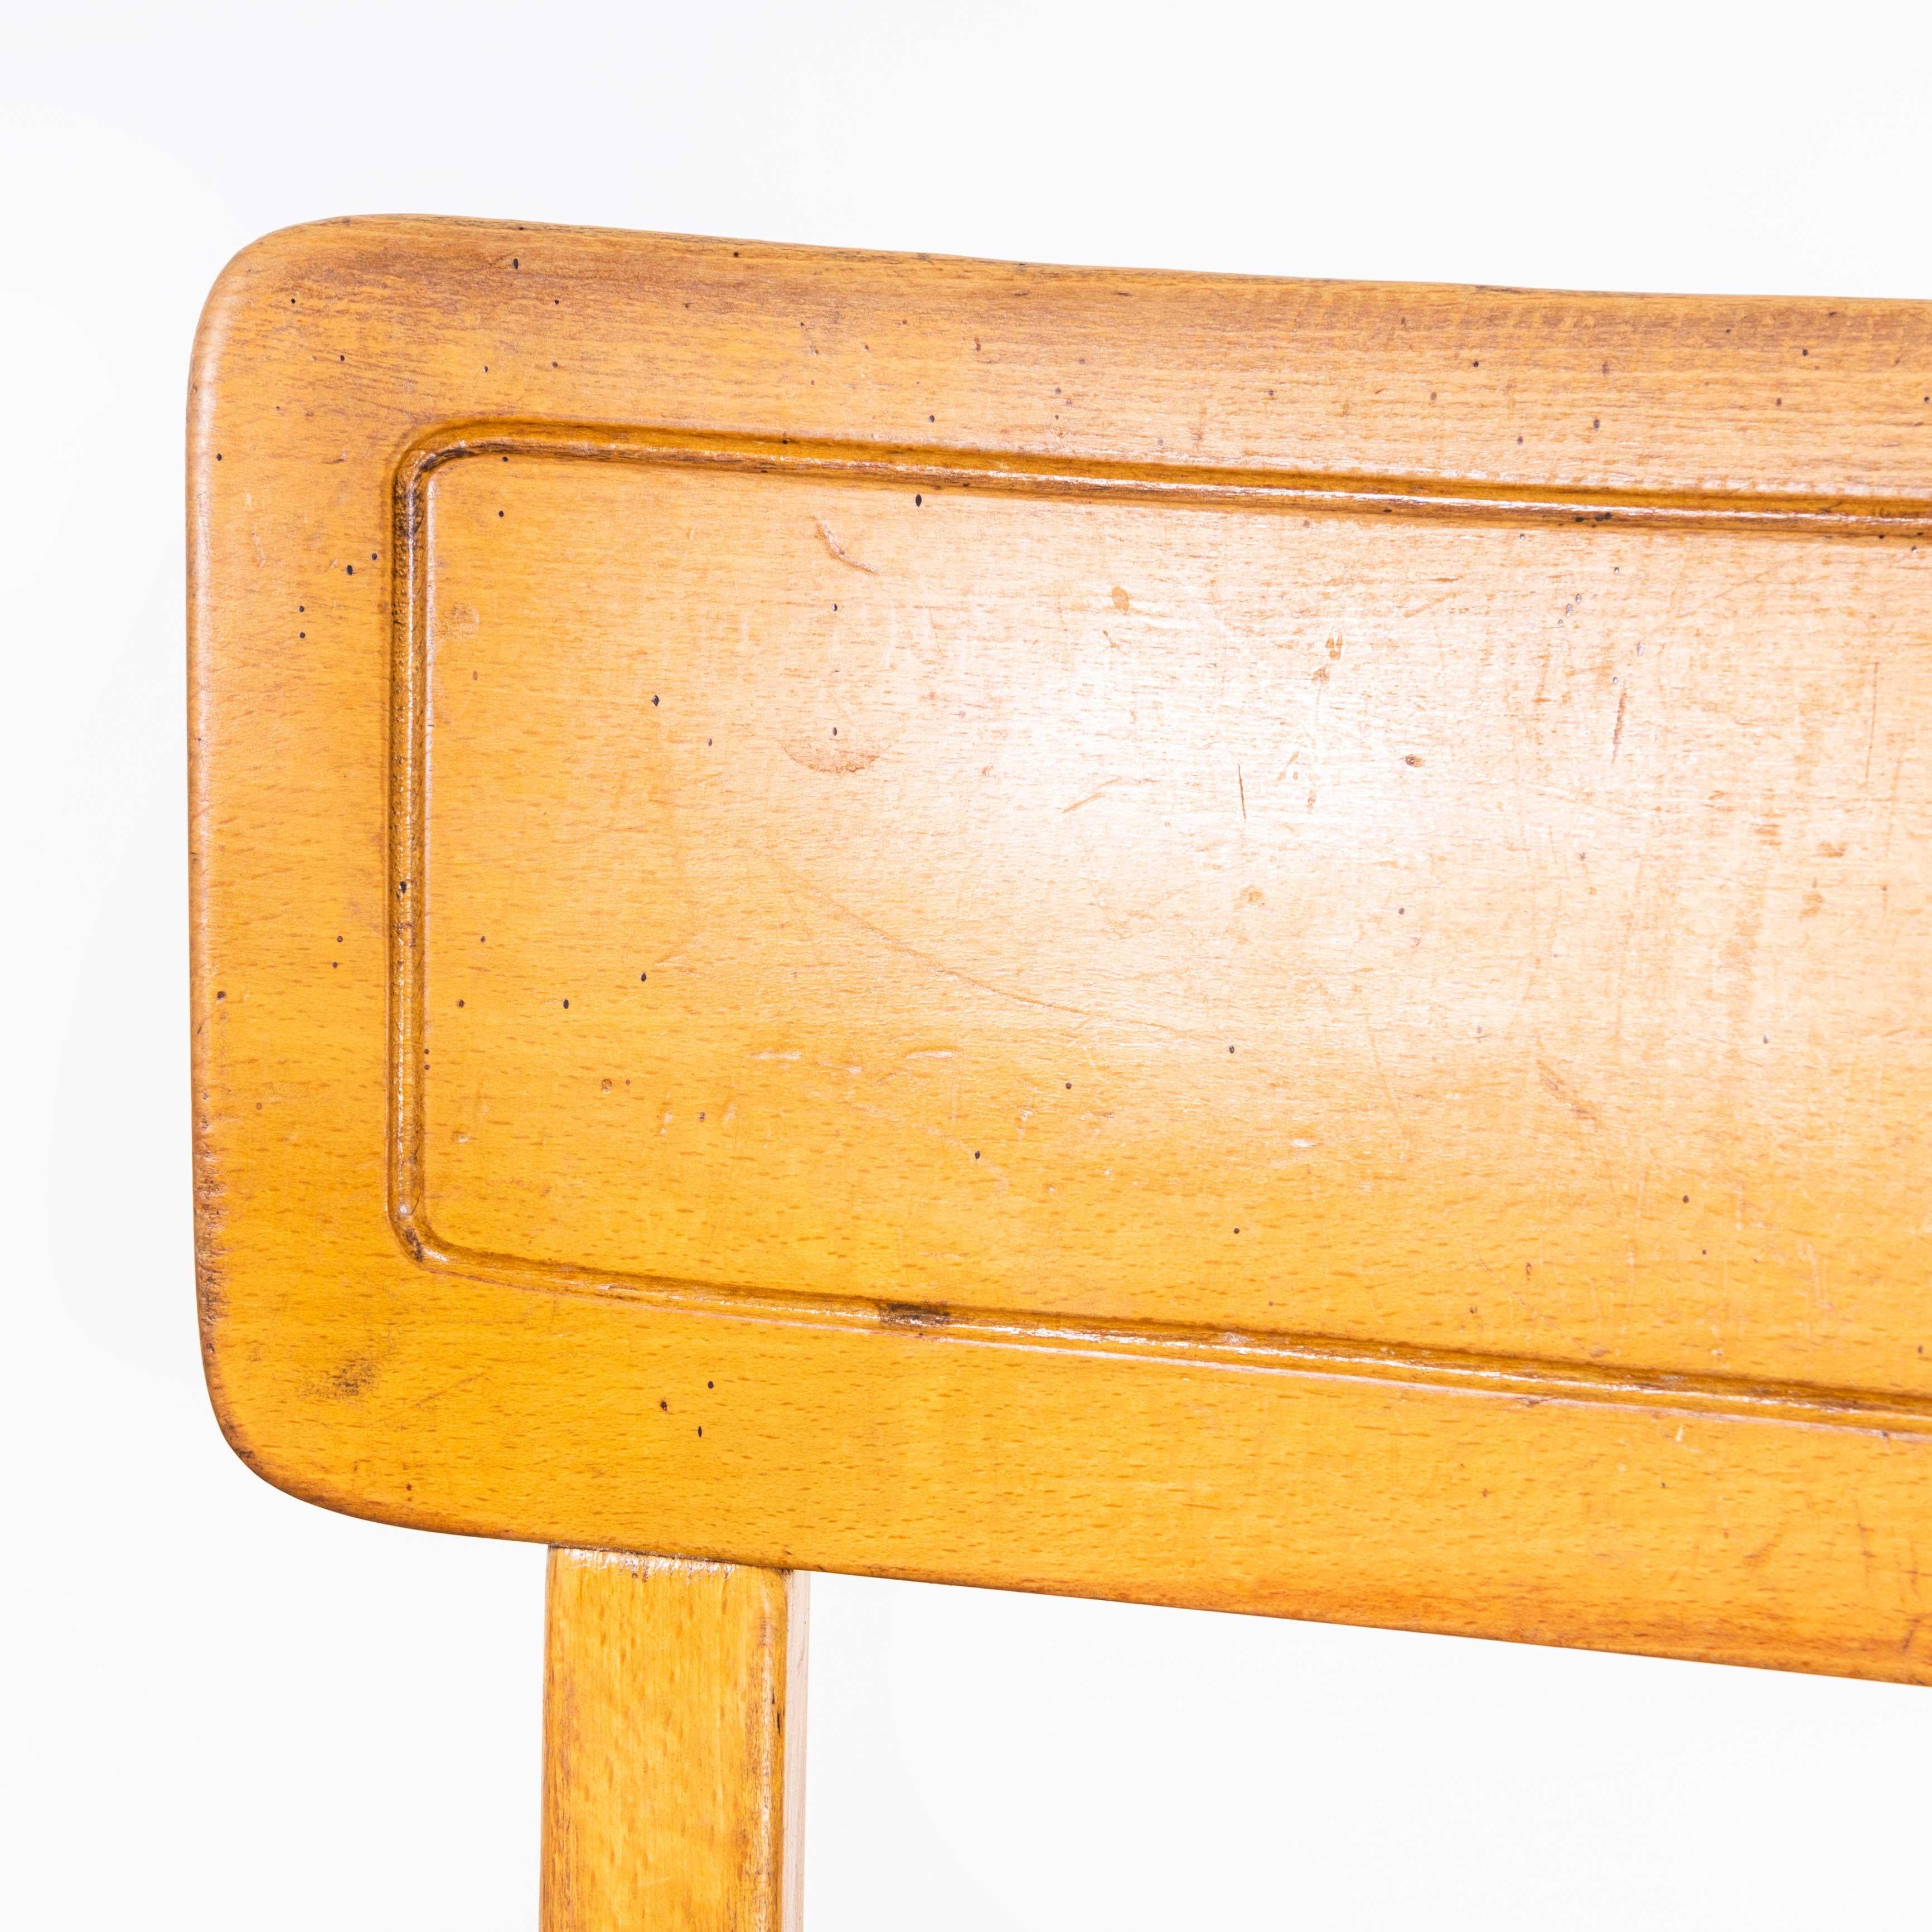 1960's Horgen Glarus Beech Saddle Back Dining Chairs - Diverses quantités disponibles.
1960's Horgen Glarus Beech Saddle Back Dining Chairs - Diverses quantités disponibles. L'un des meilleurs ensembles de chaises que nous ayons obtenus et notre